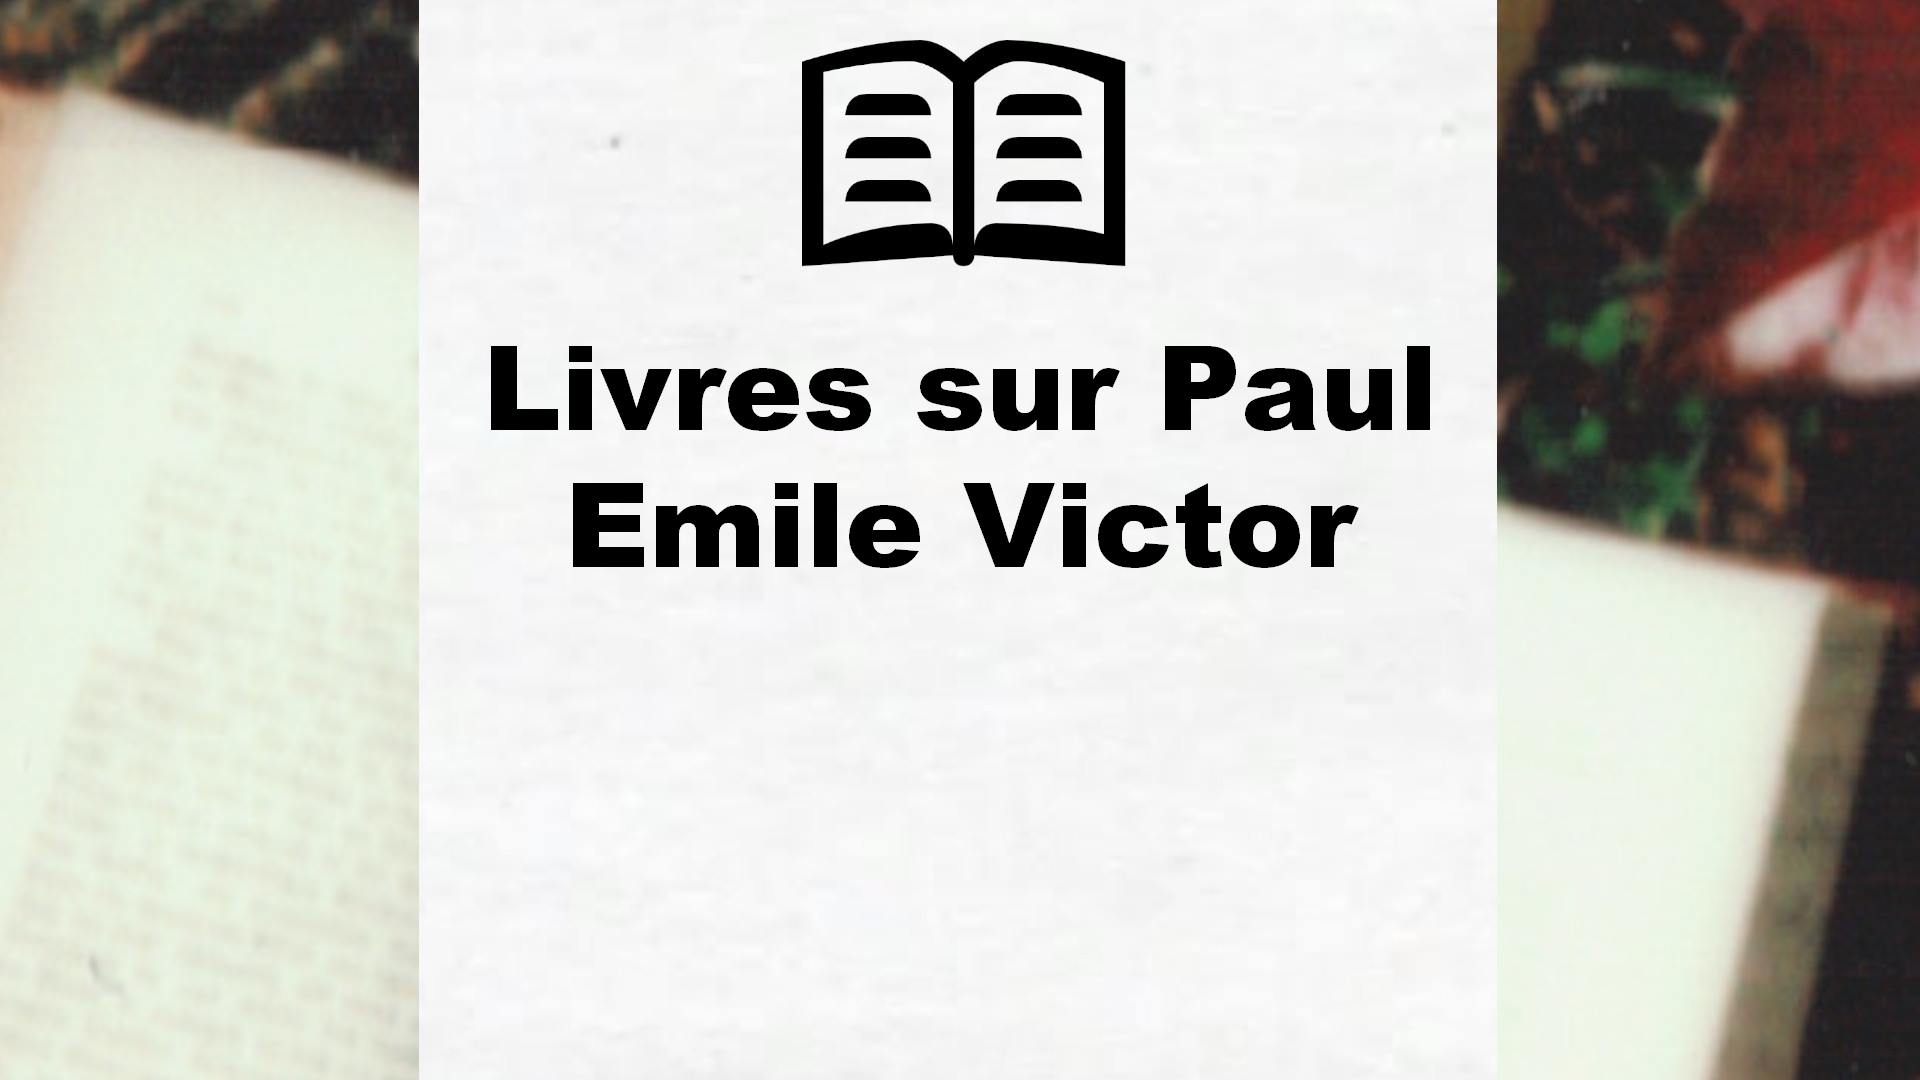 Livres sur Paul Emile Victor